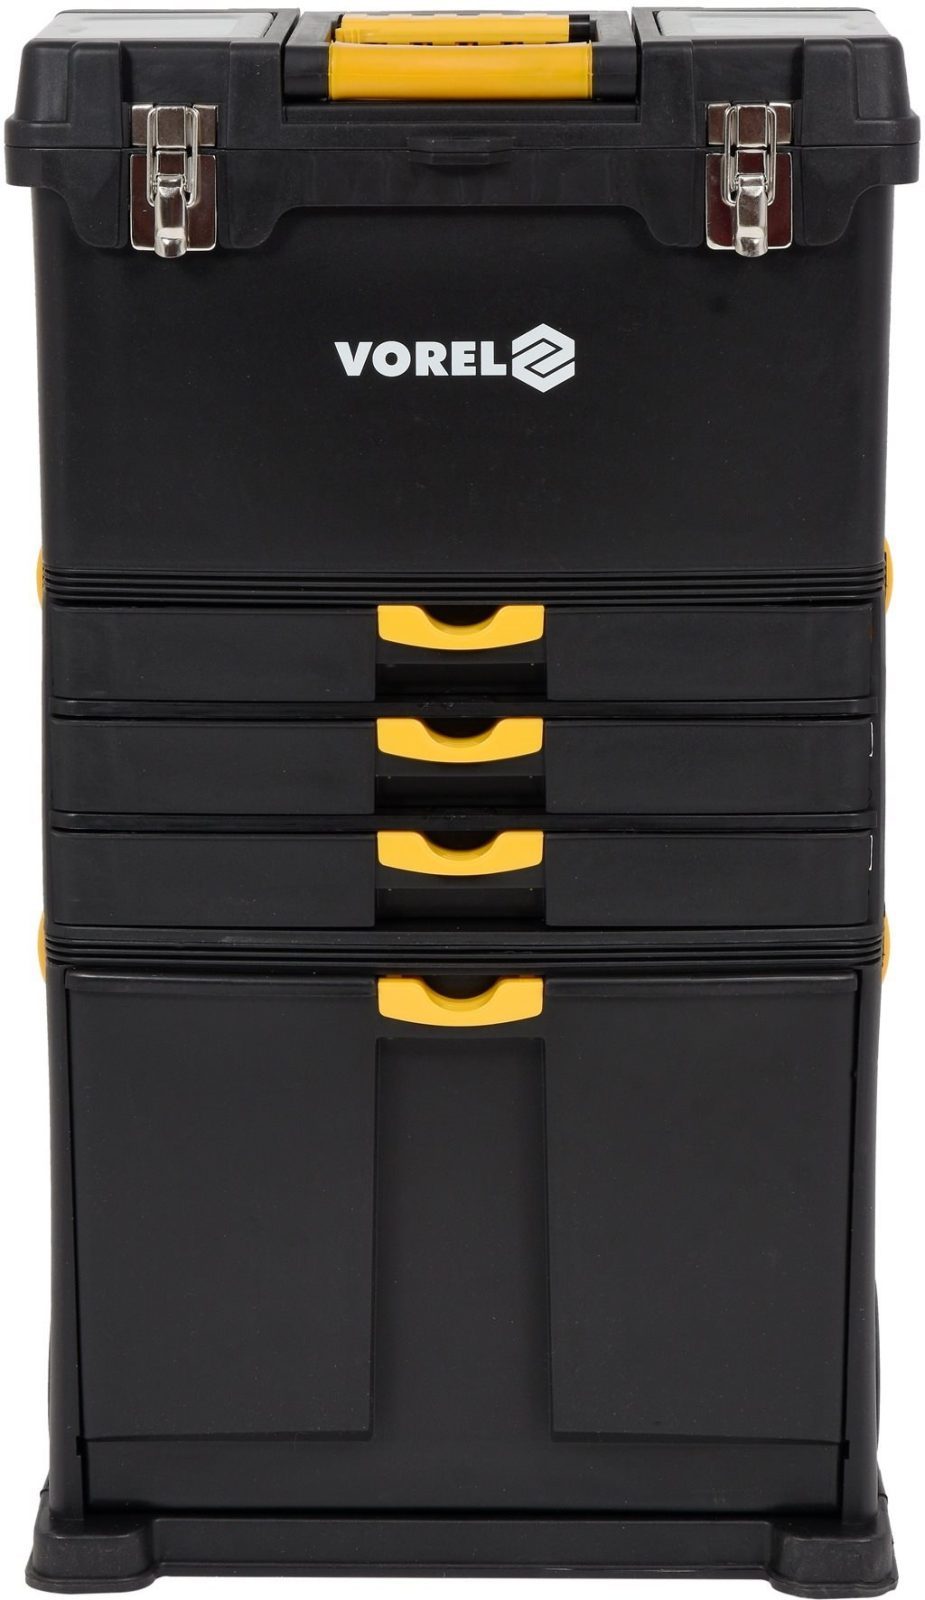 Szerszám rendszerező Vorel mobil szerszámos szekrény 3 rész